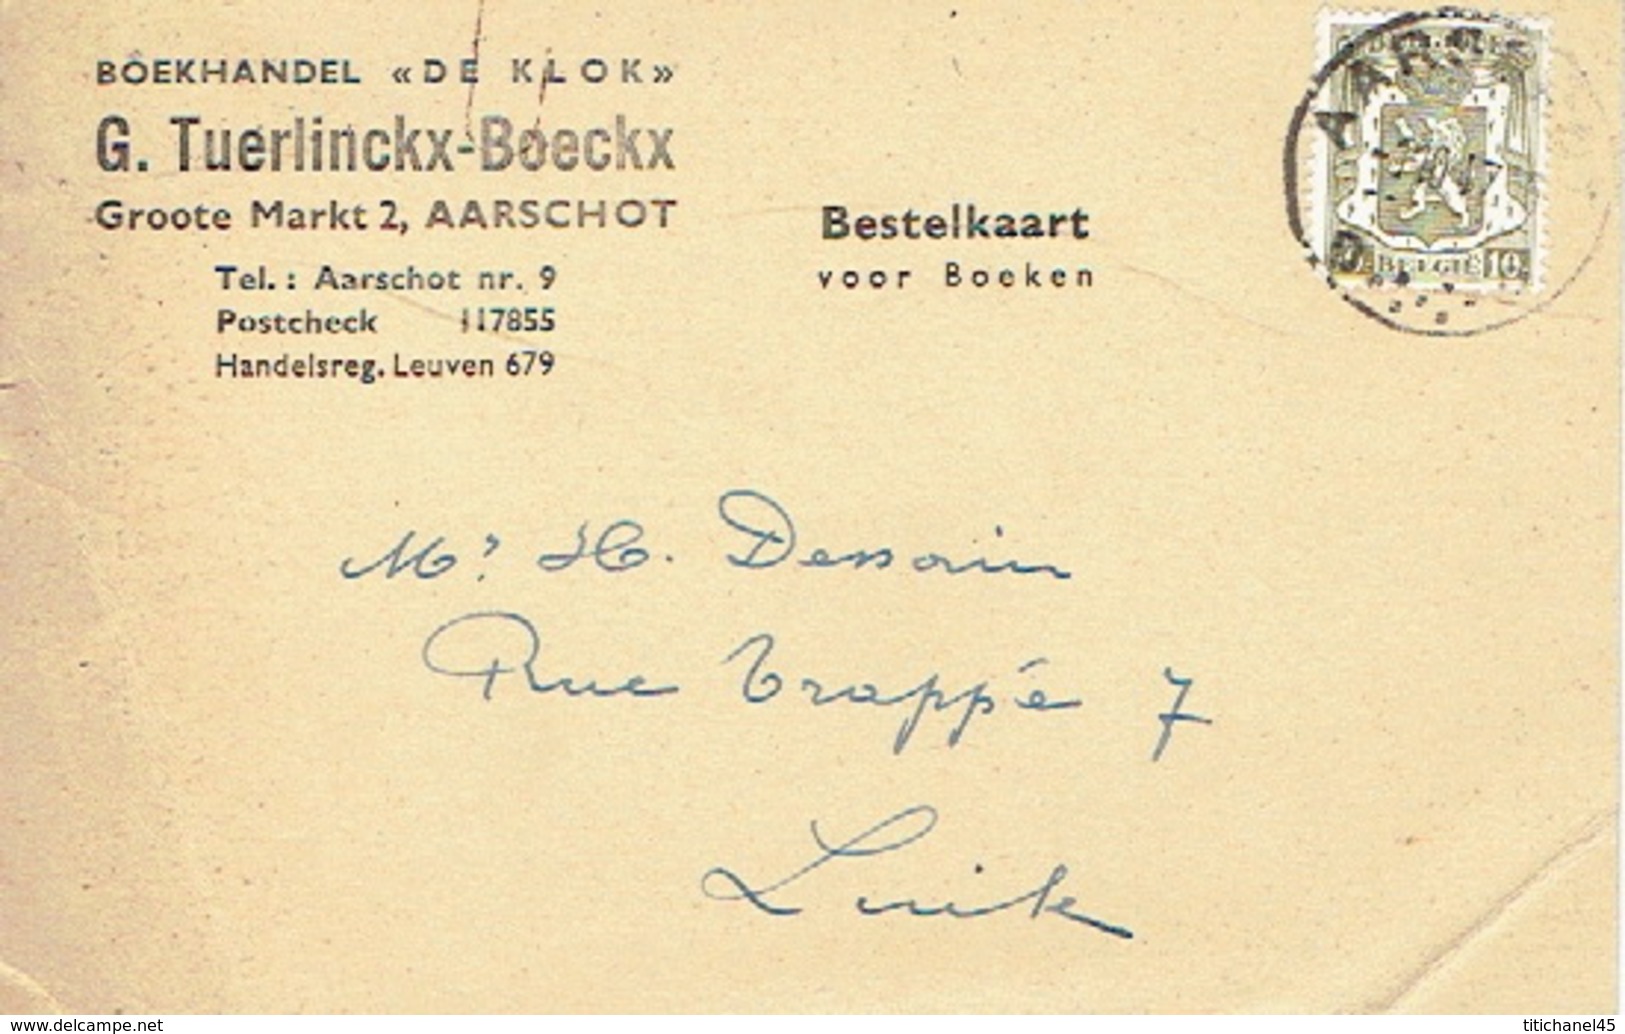 Postkaart Publicitaire 1947 AARSCHOT- "DE KLOK" - G. TUERLINCKX-BOECKX - Boekhandel - Aarschot